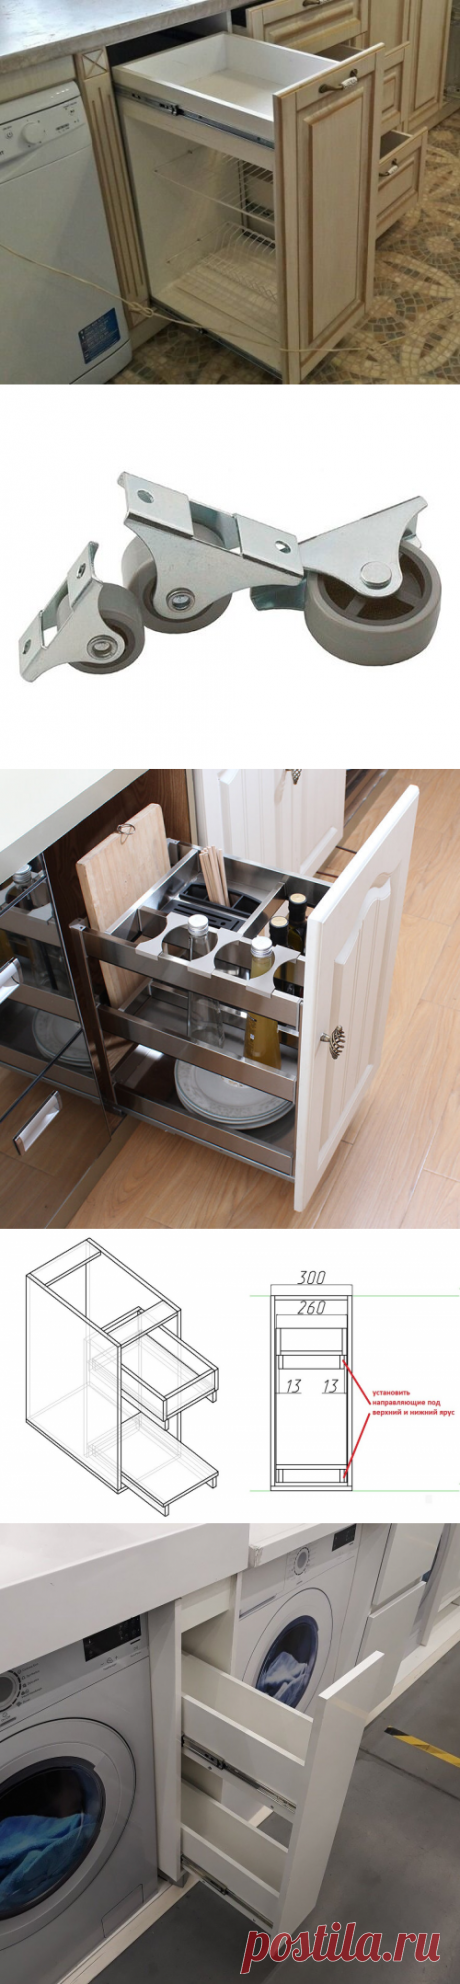 Как лучше спроектировать и сделать аналог дорогих выдвижных кухонных систем хранения из ДСП | Мебель своими руками | Яндекс Дзен